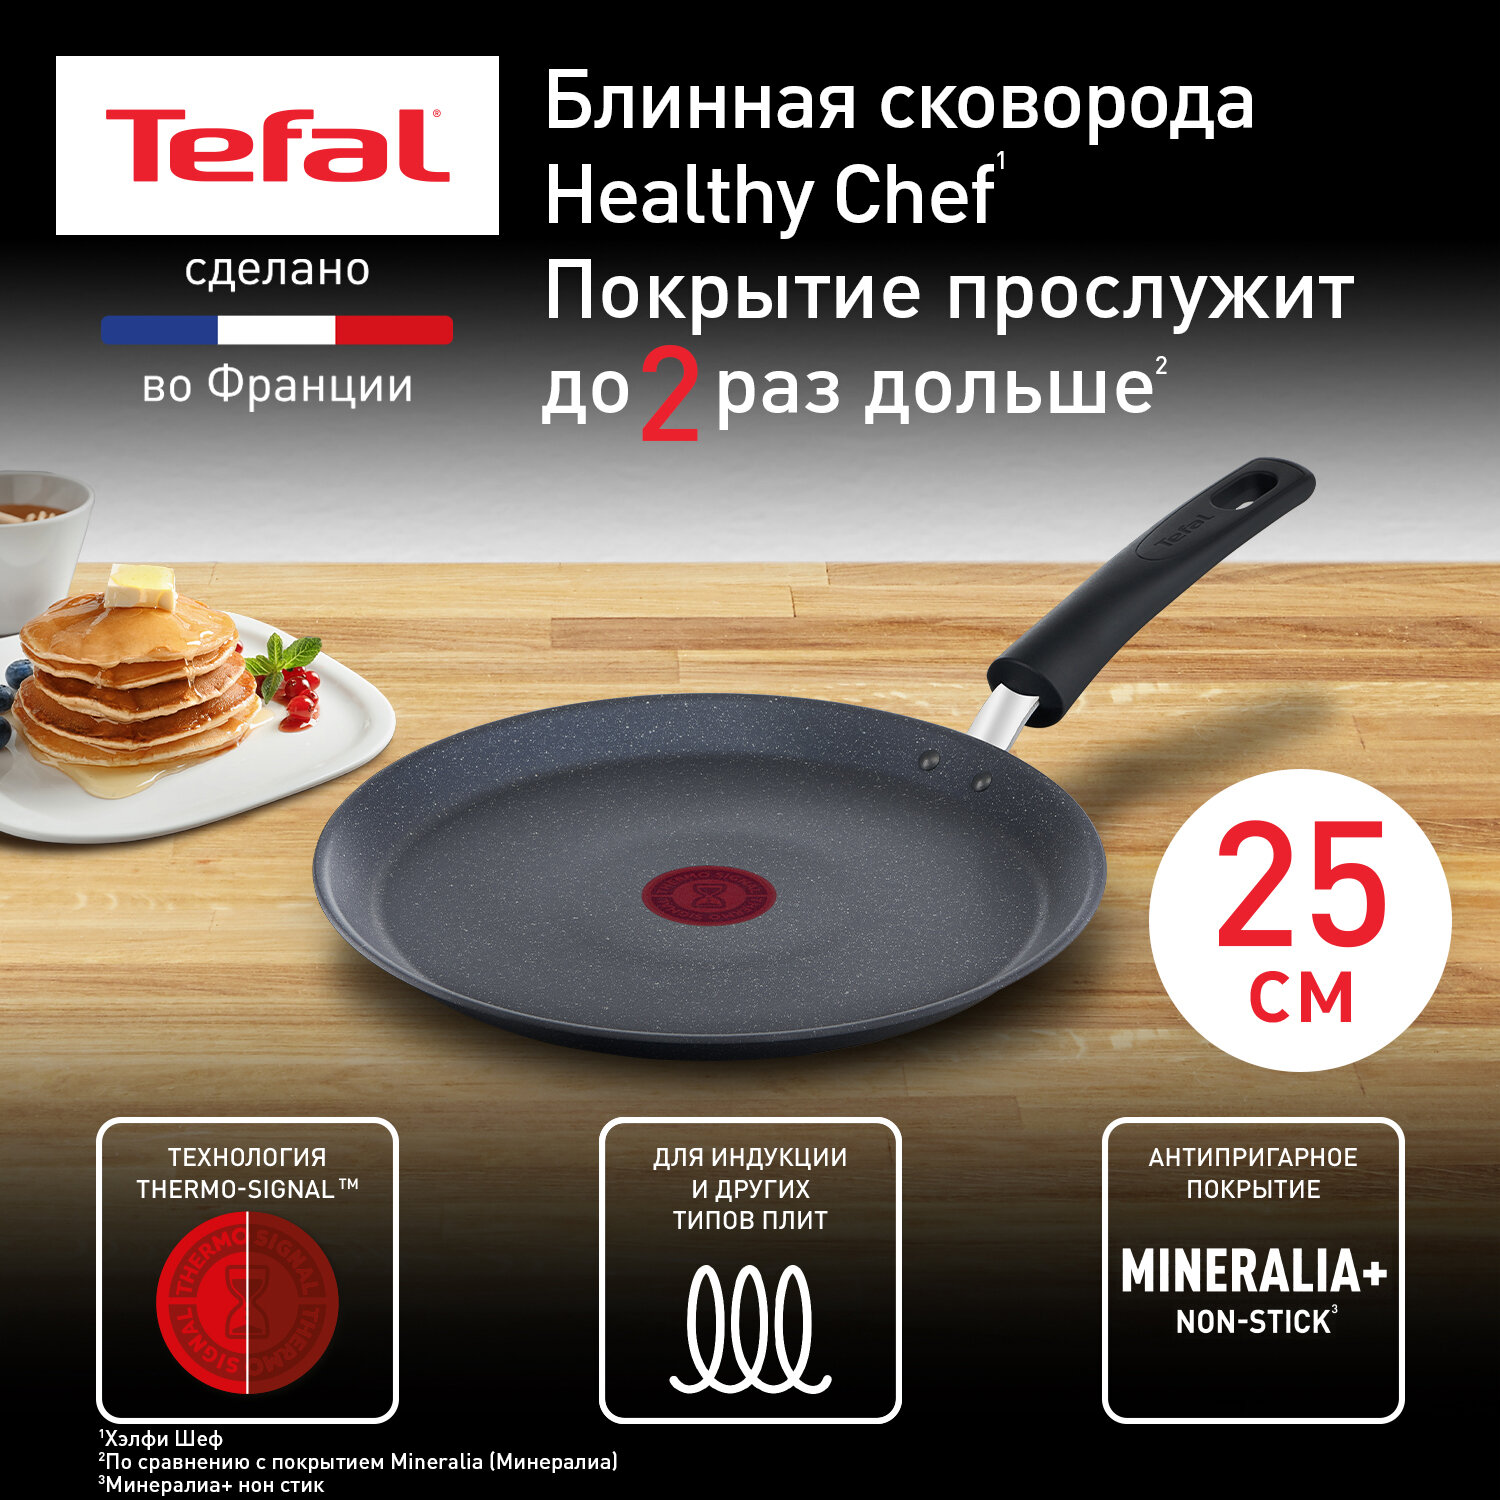 Блинная сковорода Tefal Healthy Chef G1503872, 25 см, с индикатором температуры, с антипригарным покрытием, подходит для индукции, сделано во Франции